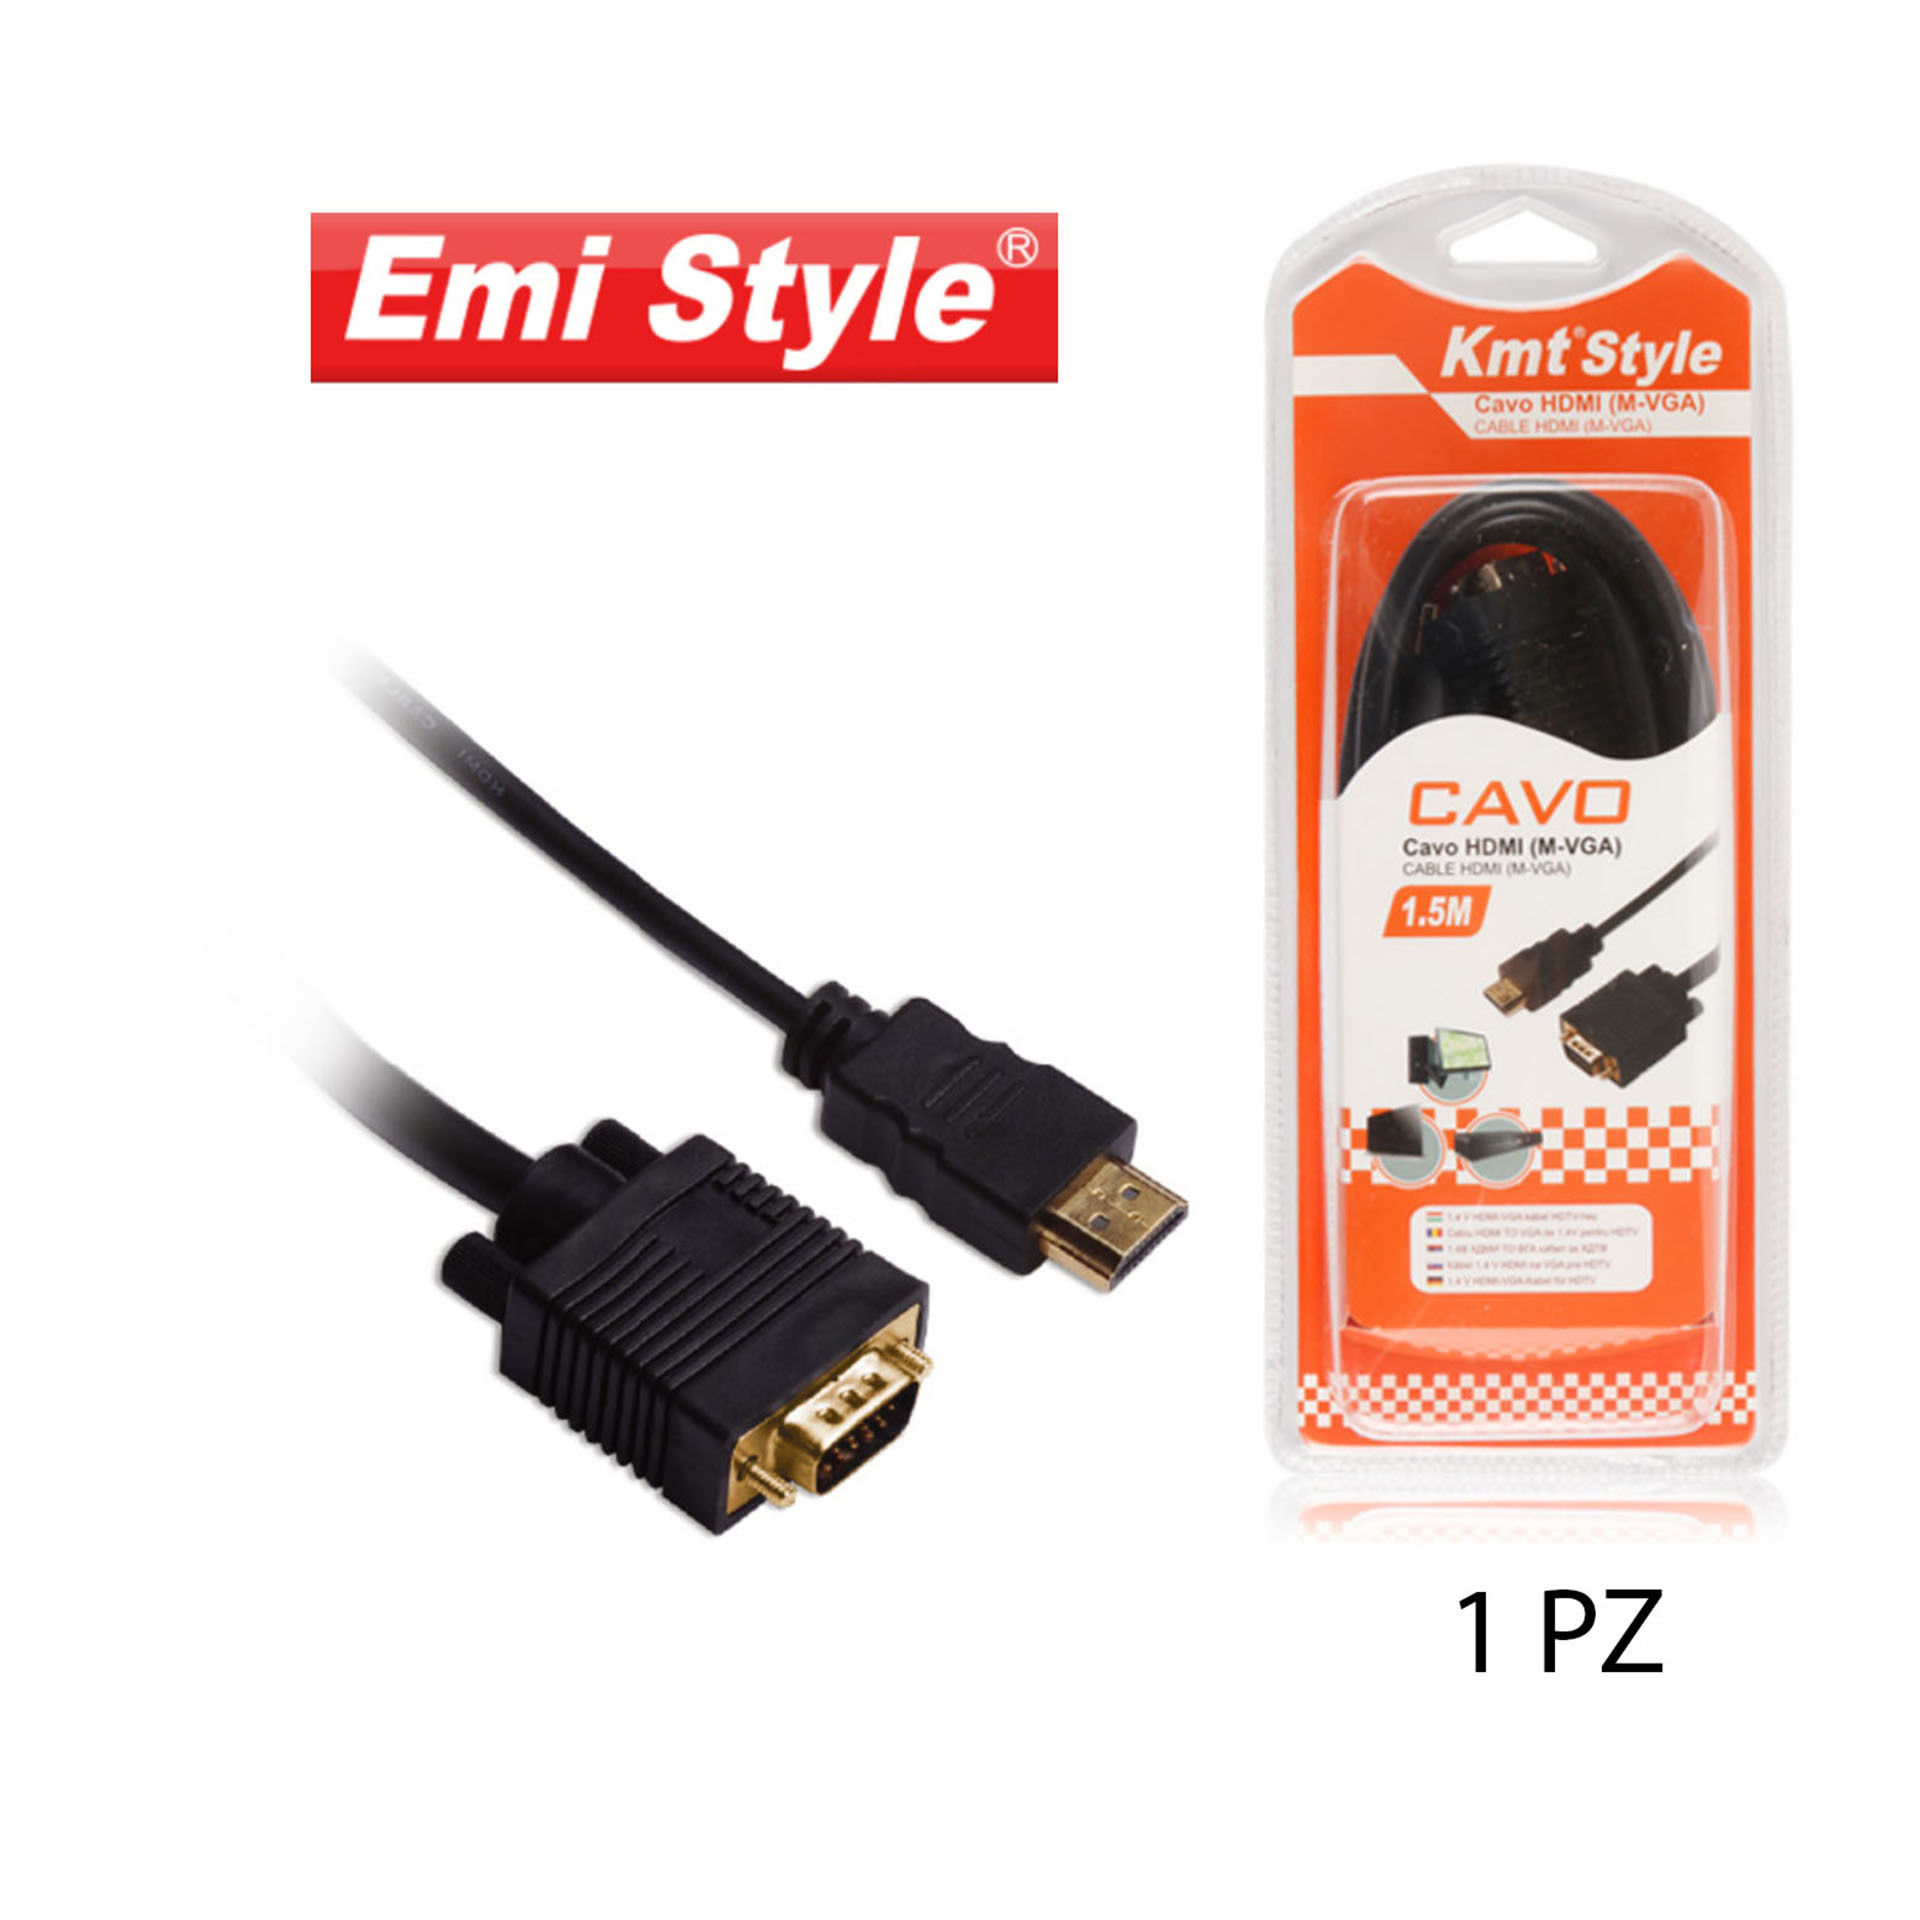 EMI STYLE CAVO HDMI (M-VGA) 1.5MEmi Style